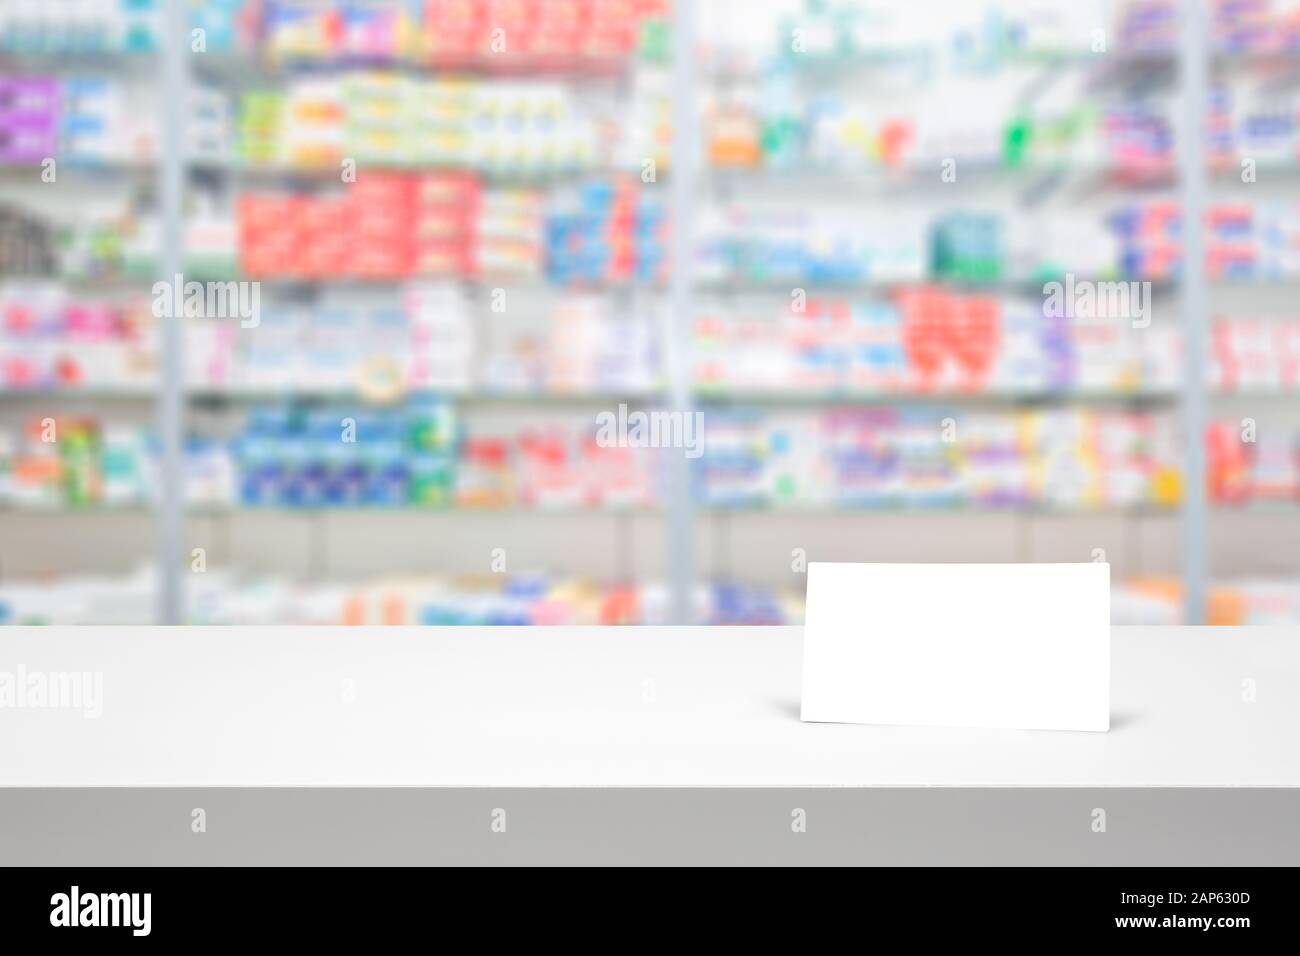 Zähler leer Hintergrund weiß Store medizinische Tabelle Apotheke Geschäft Regal verschwommen Droge Shop Apotheke Medikamente Karte Konzept-stock Bild Stockfoto